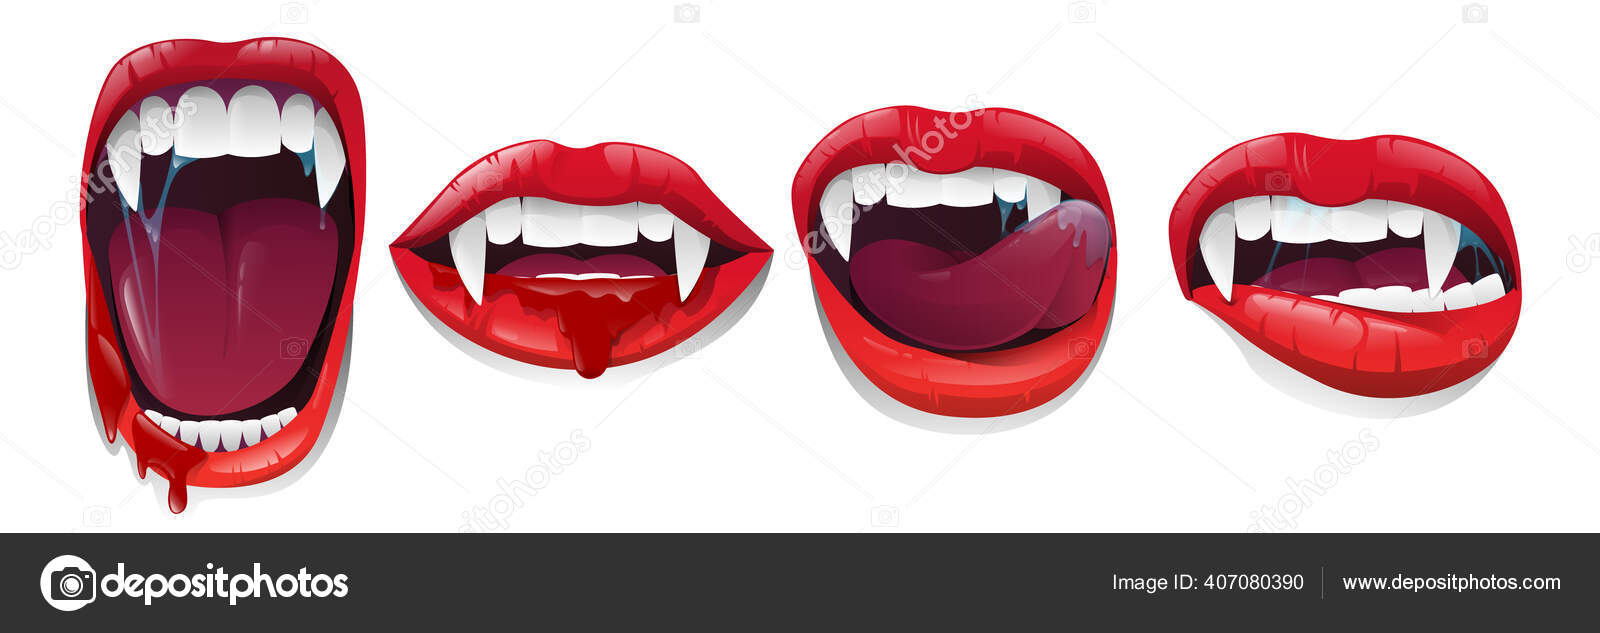 dentes e lábios de vampiro para o halloween. desenho vetorial conjunto  isolado em um fundo branco. 6606563 Vetor no Vecteezy